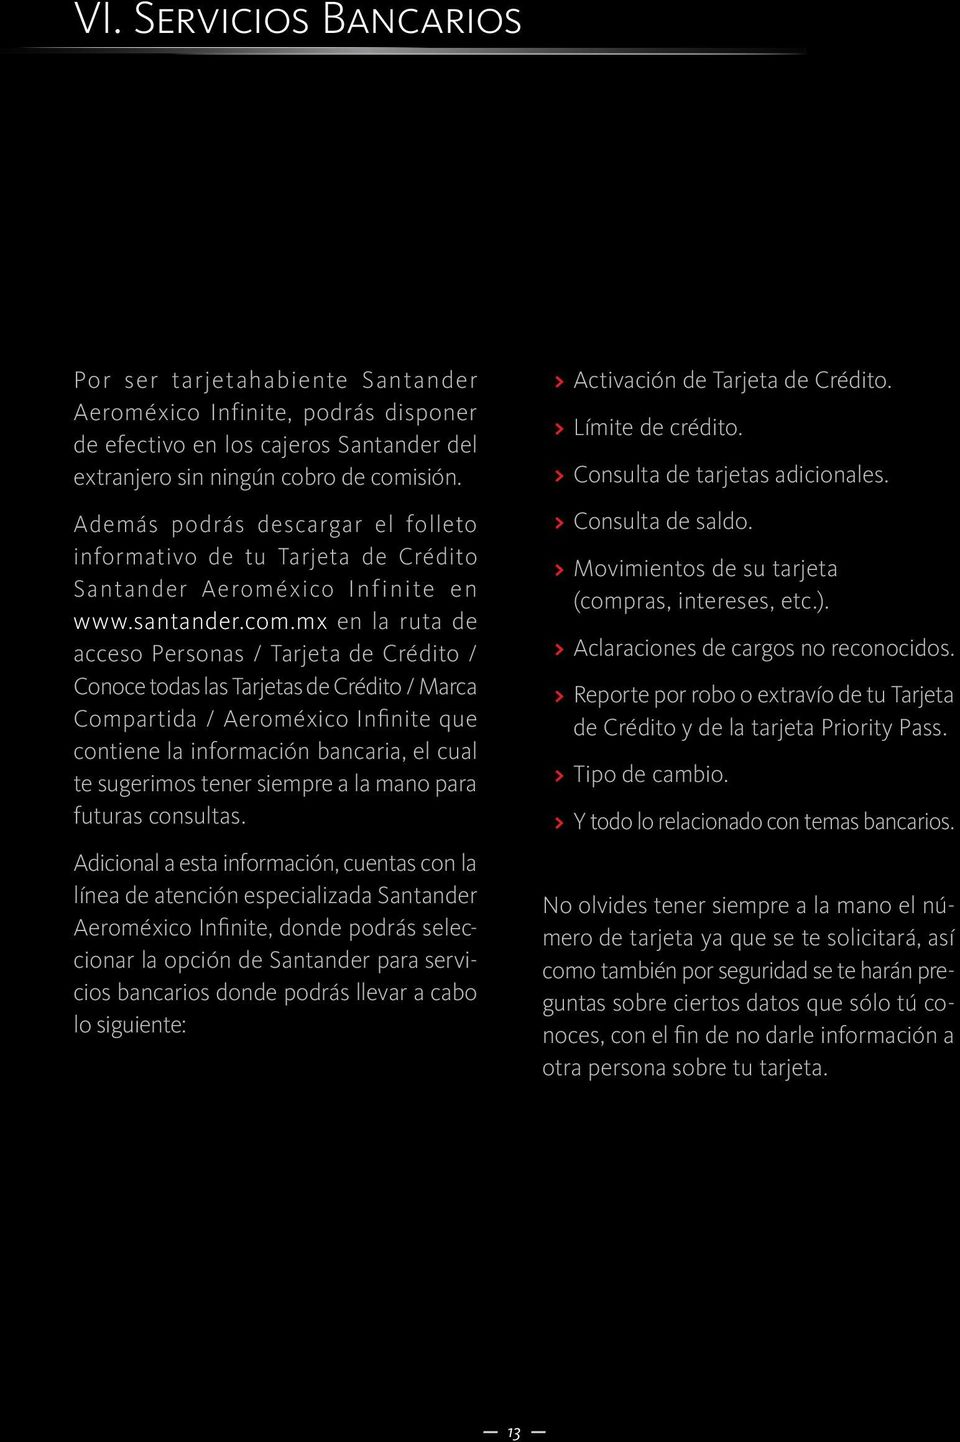 Además podrás descargar el folleto informativo de tu Tarjeta de Crédito Santander Aeroméxico Infinite en www.santander.com.